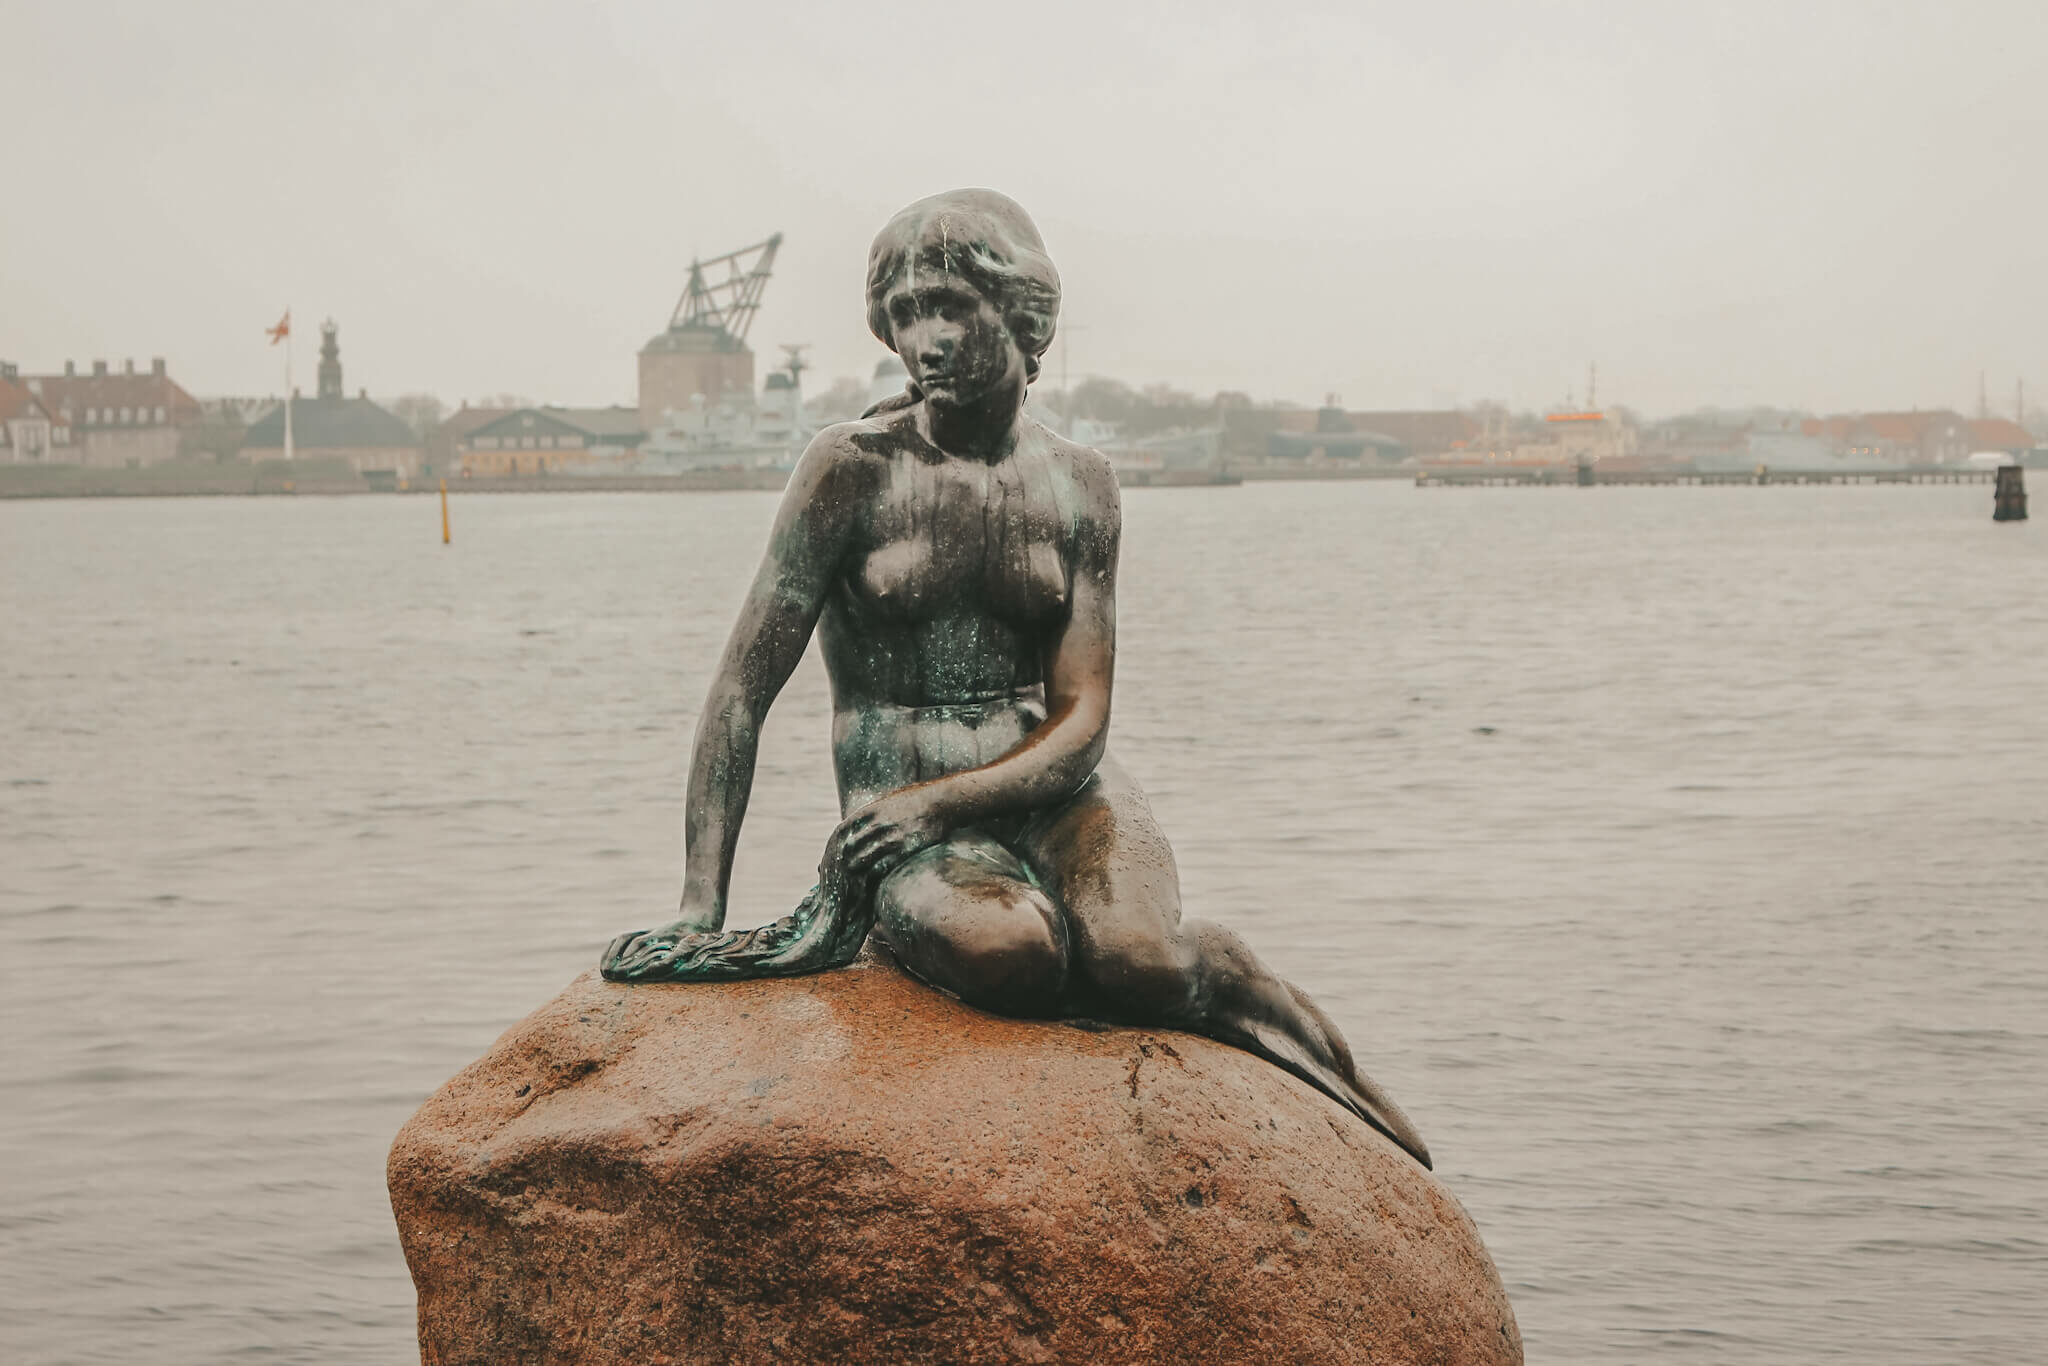 La sirenetta Copenhagen